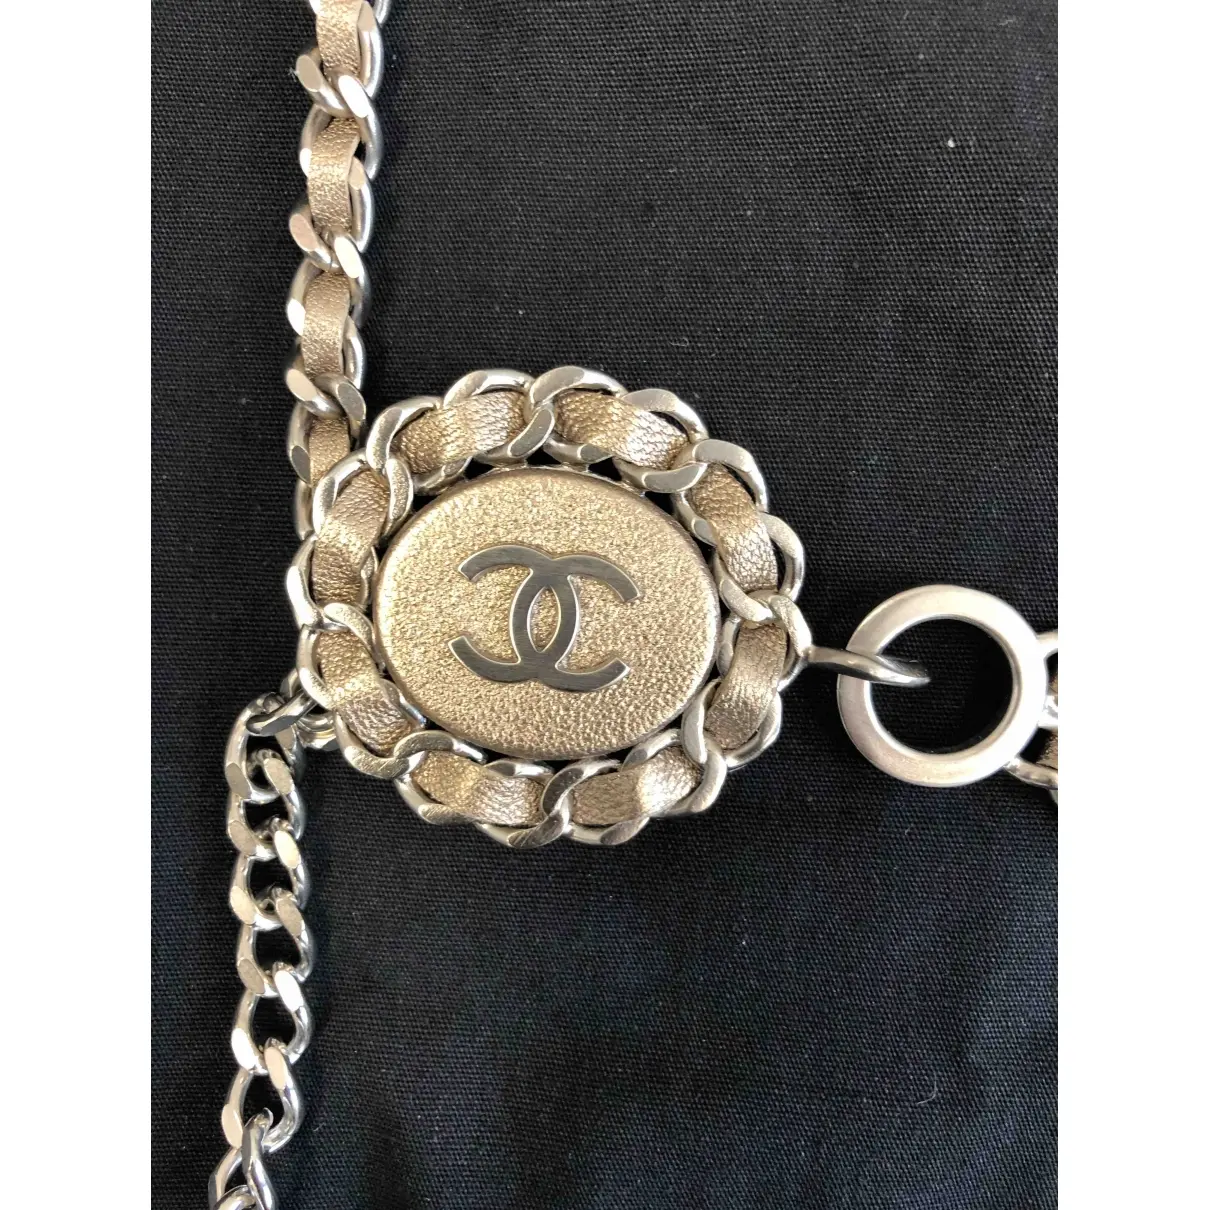 Buy Chanel Belt online - Vintage